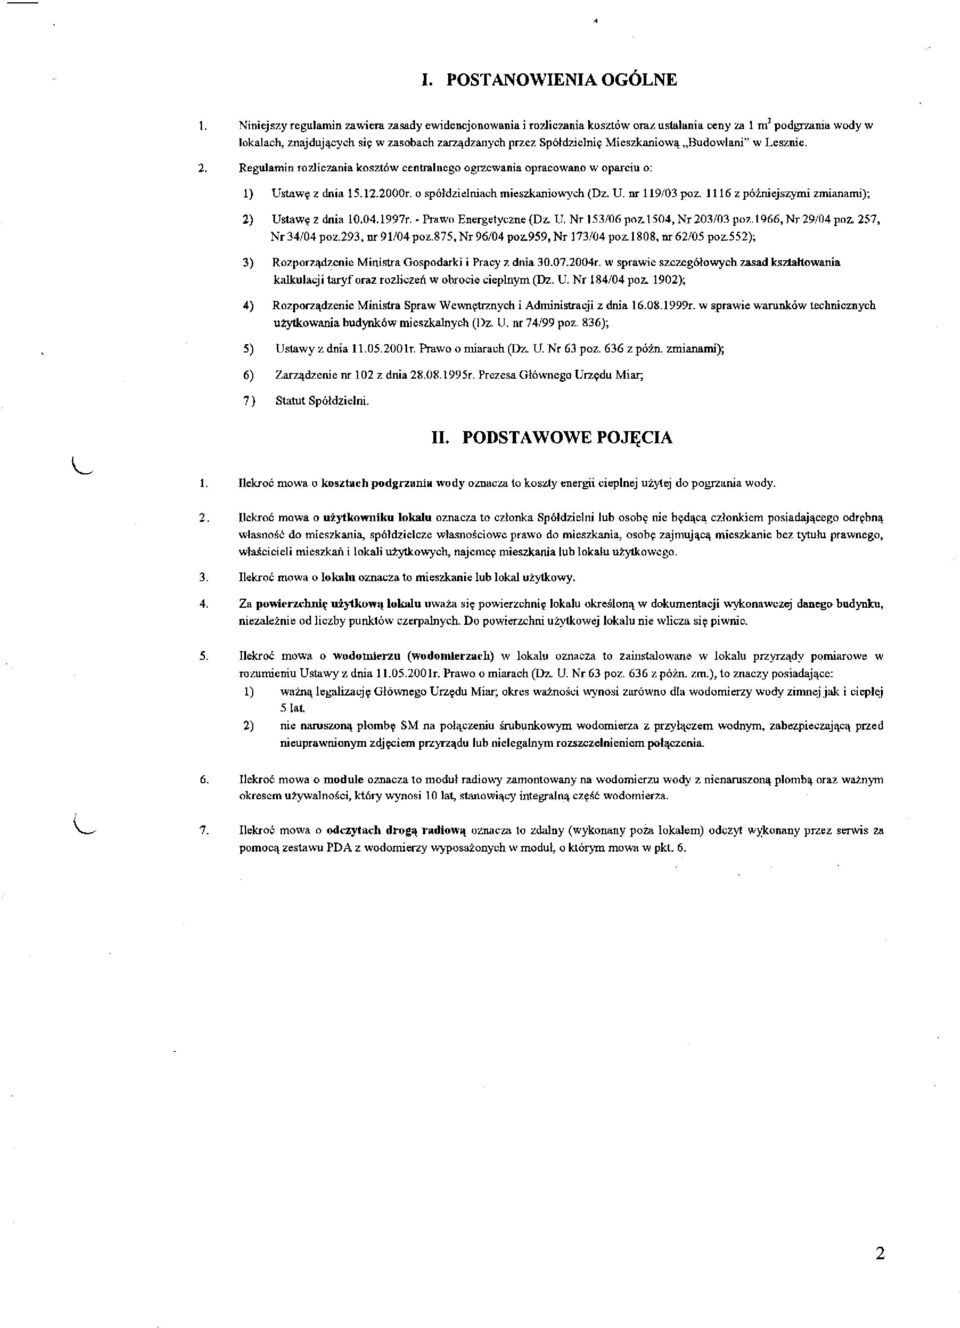 Mieszkaniową Budowlani" w Lesznie. 2. Regulamin rozliczania kosztów centralnego ogrzewania opracowano w oparciu o: 1) Ustawę z dnia 15.12.2000r. o spółdzielniach mieszkaniowych (Dz. U. nr 119/03 poz.